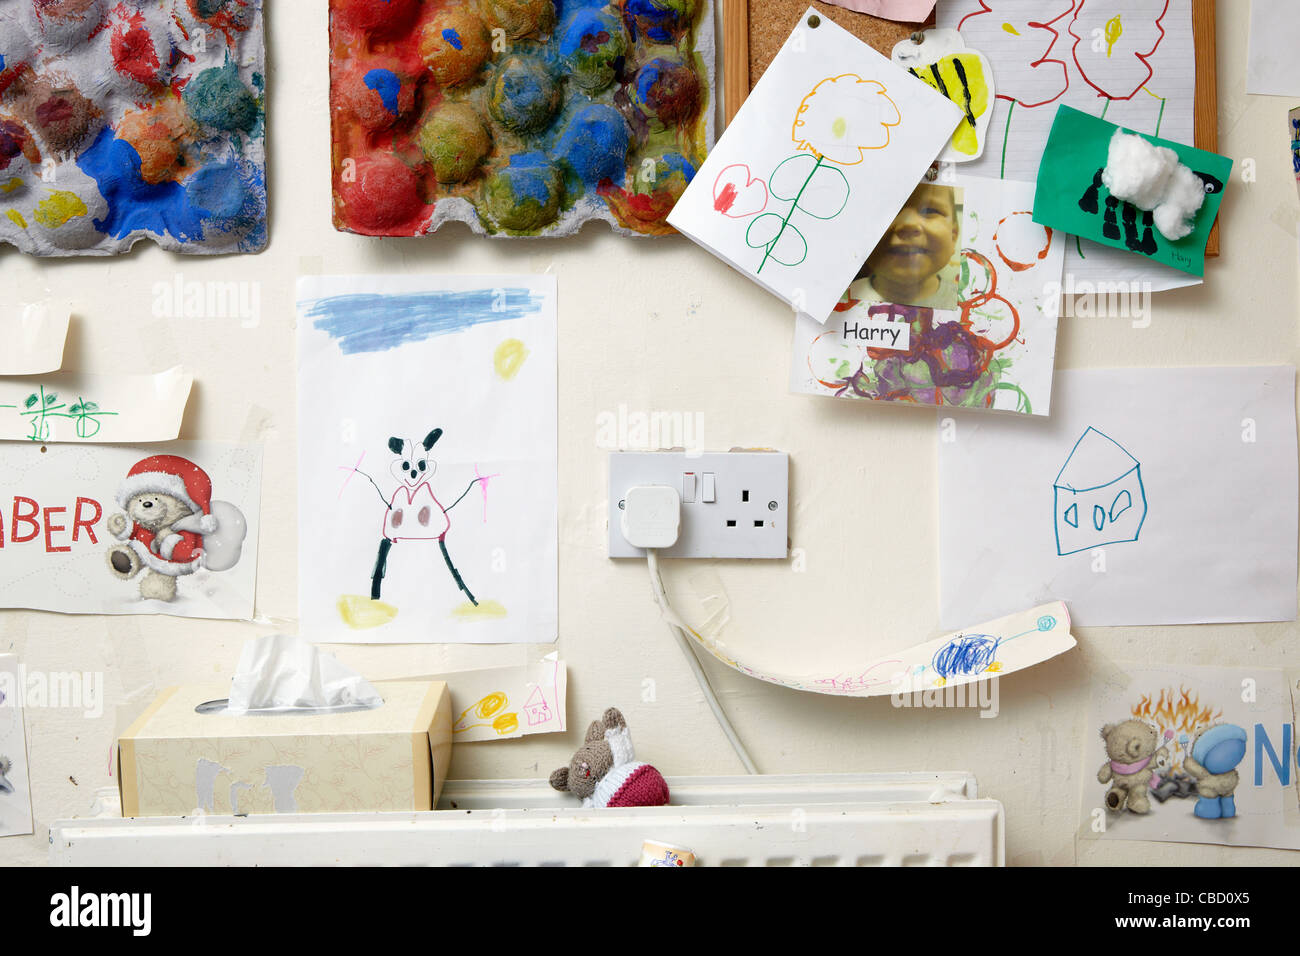 child's art on kitchen wall Stock Photo